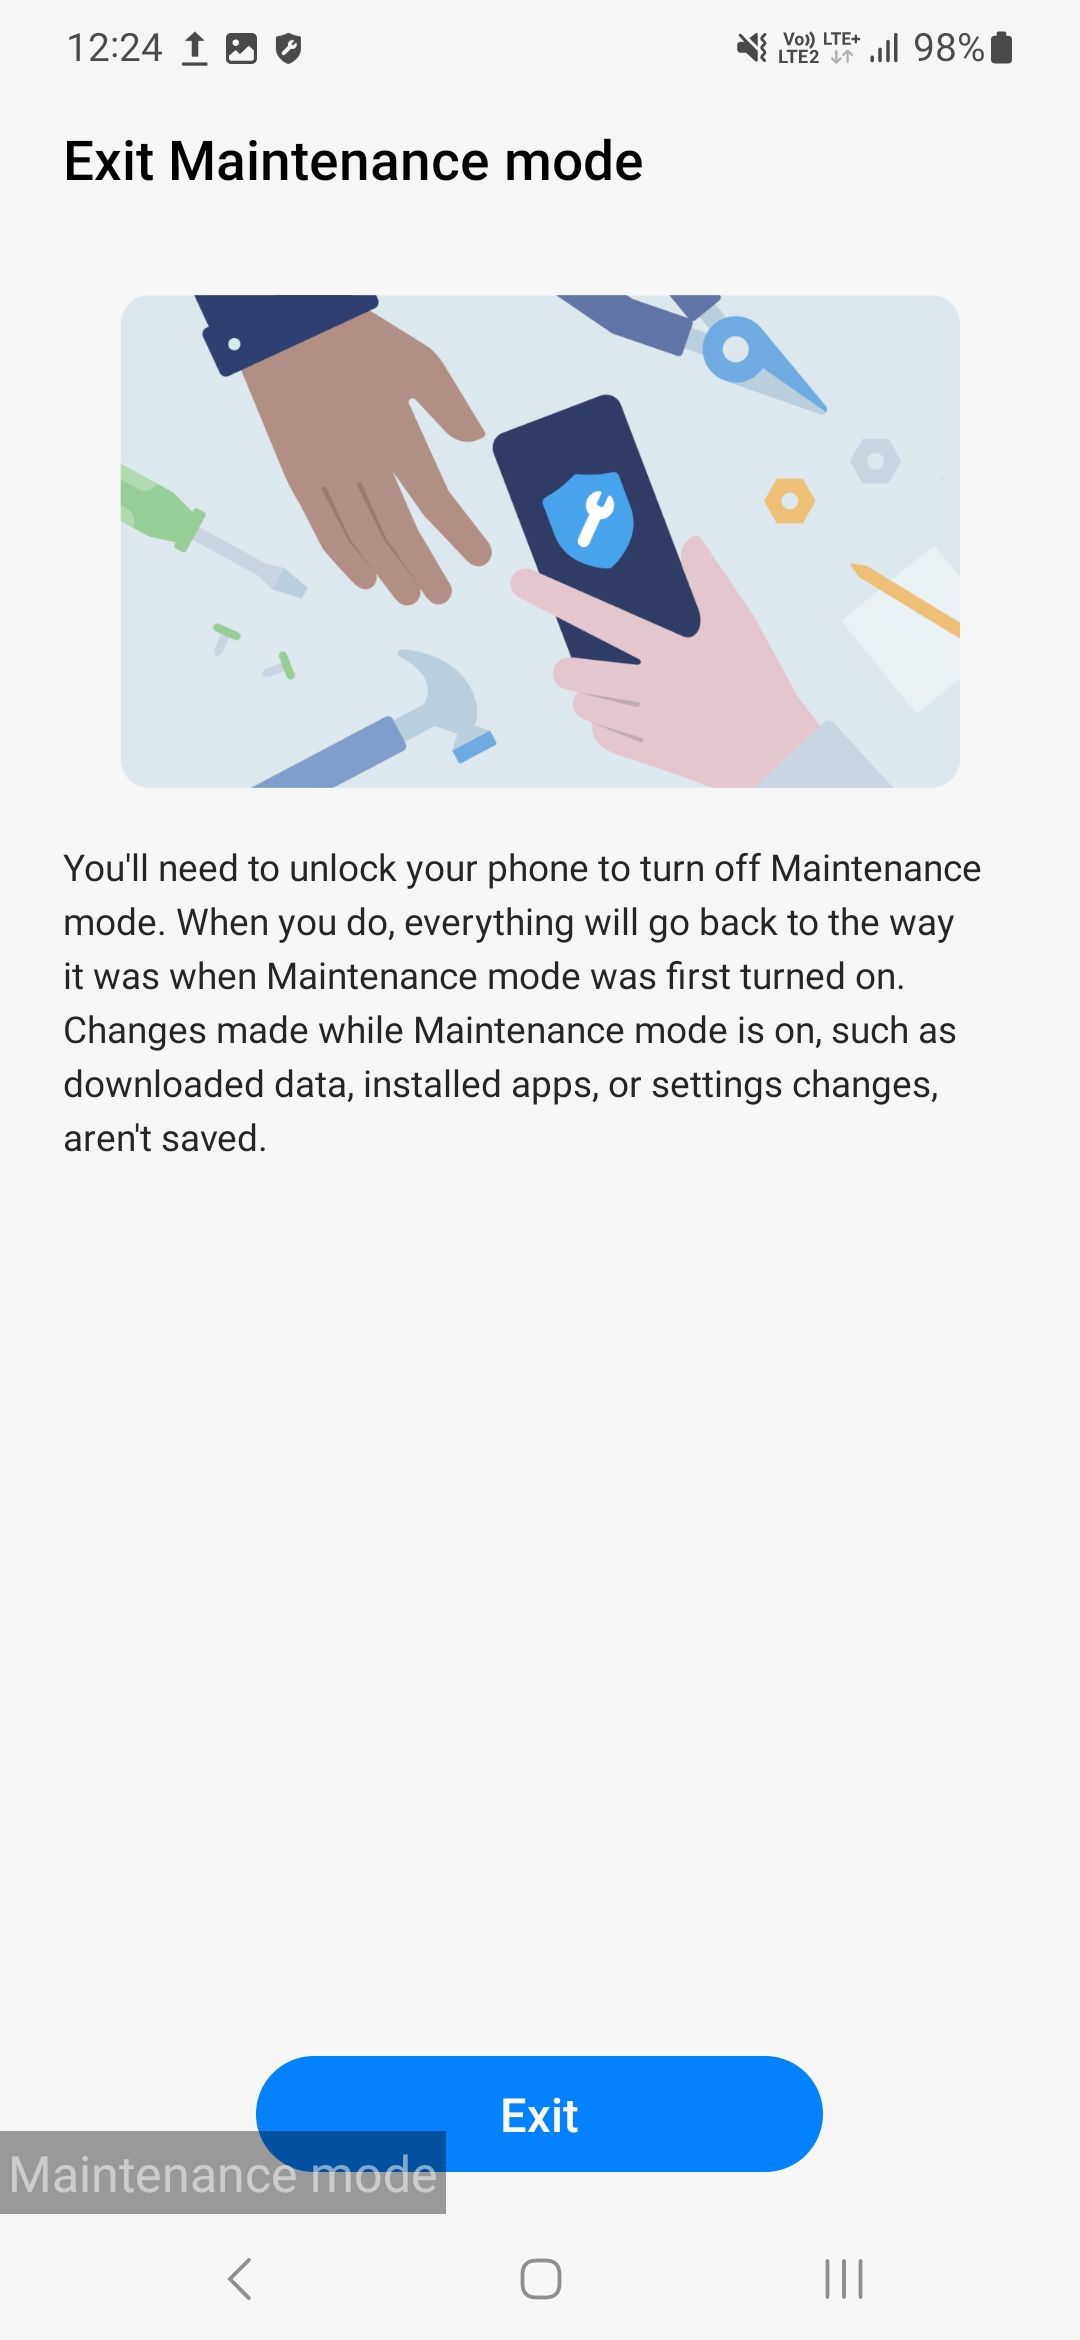 Exit maintenance mode